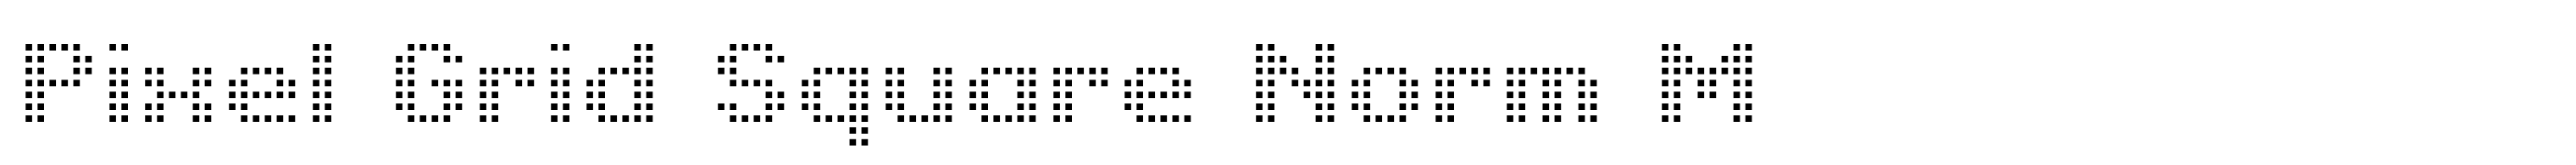 Pixel Grid Square Norm M